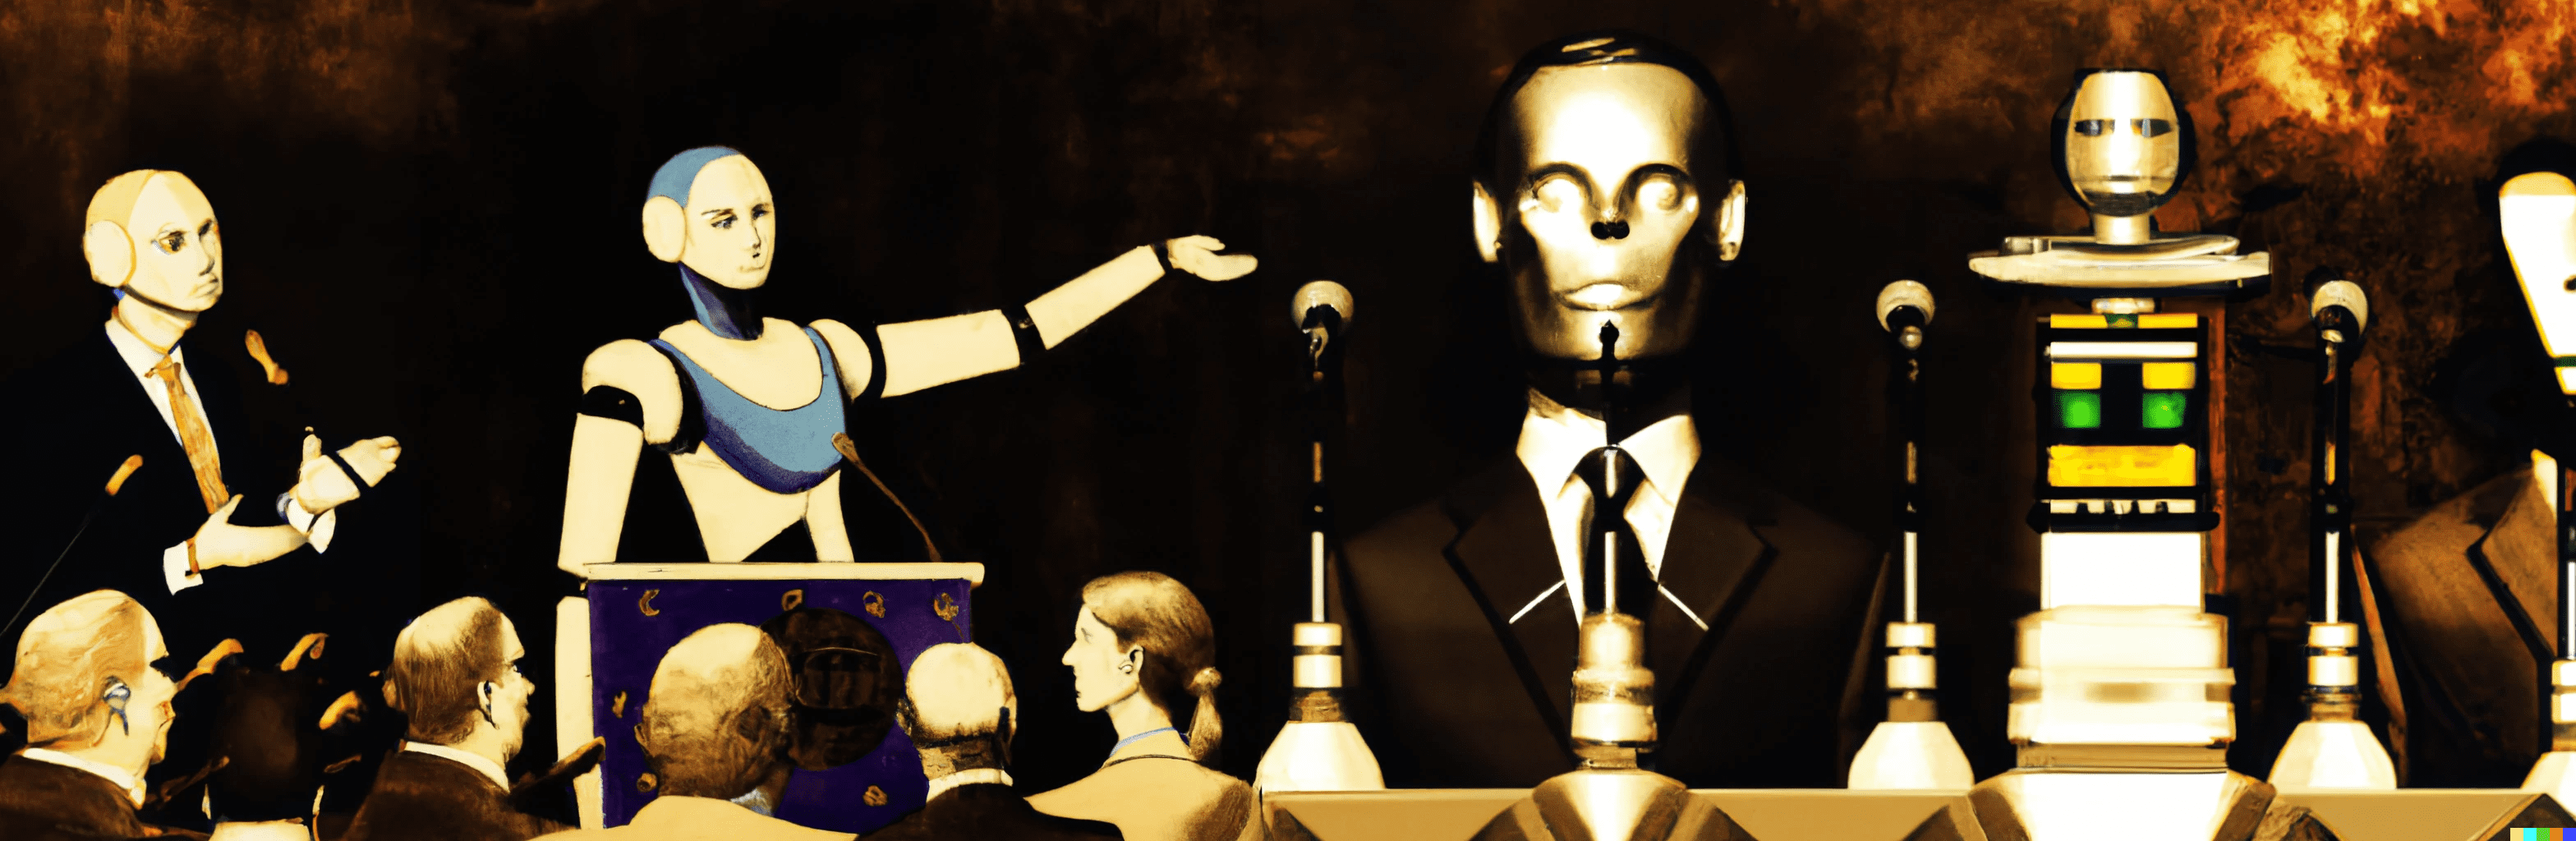 La IA, la experiencia humana y la decisión política